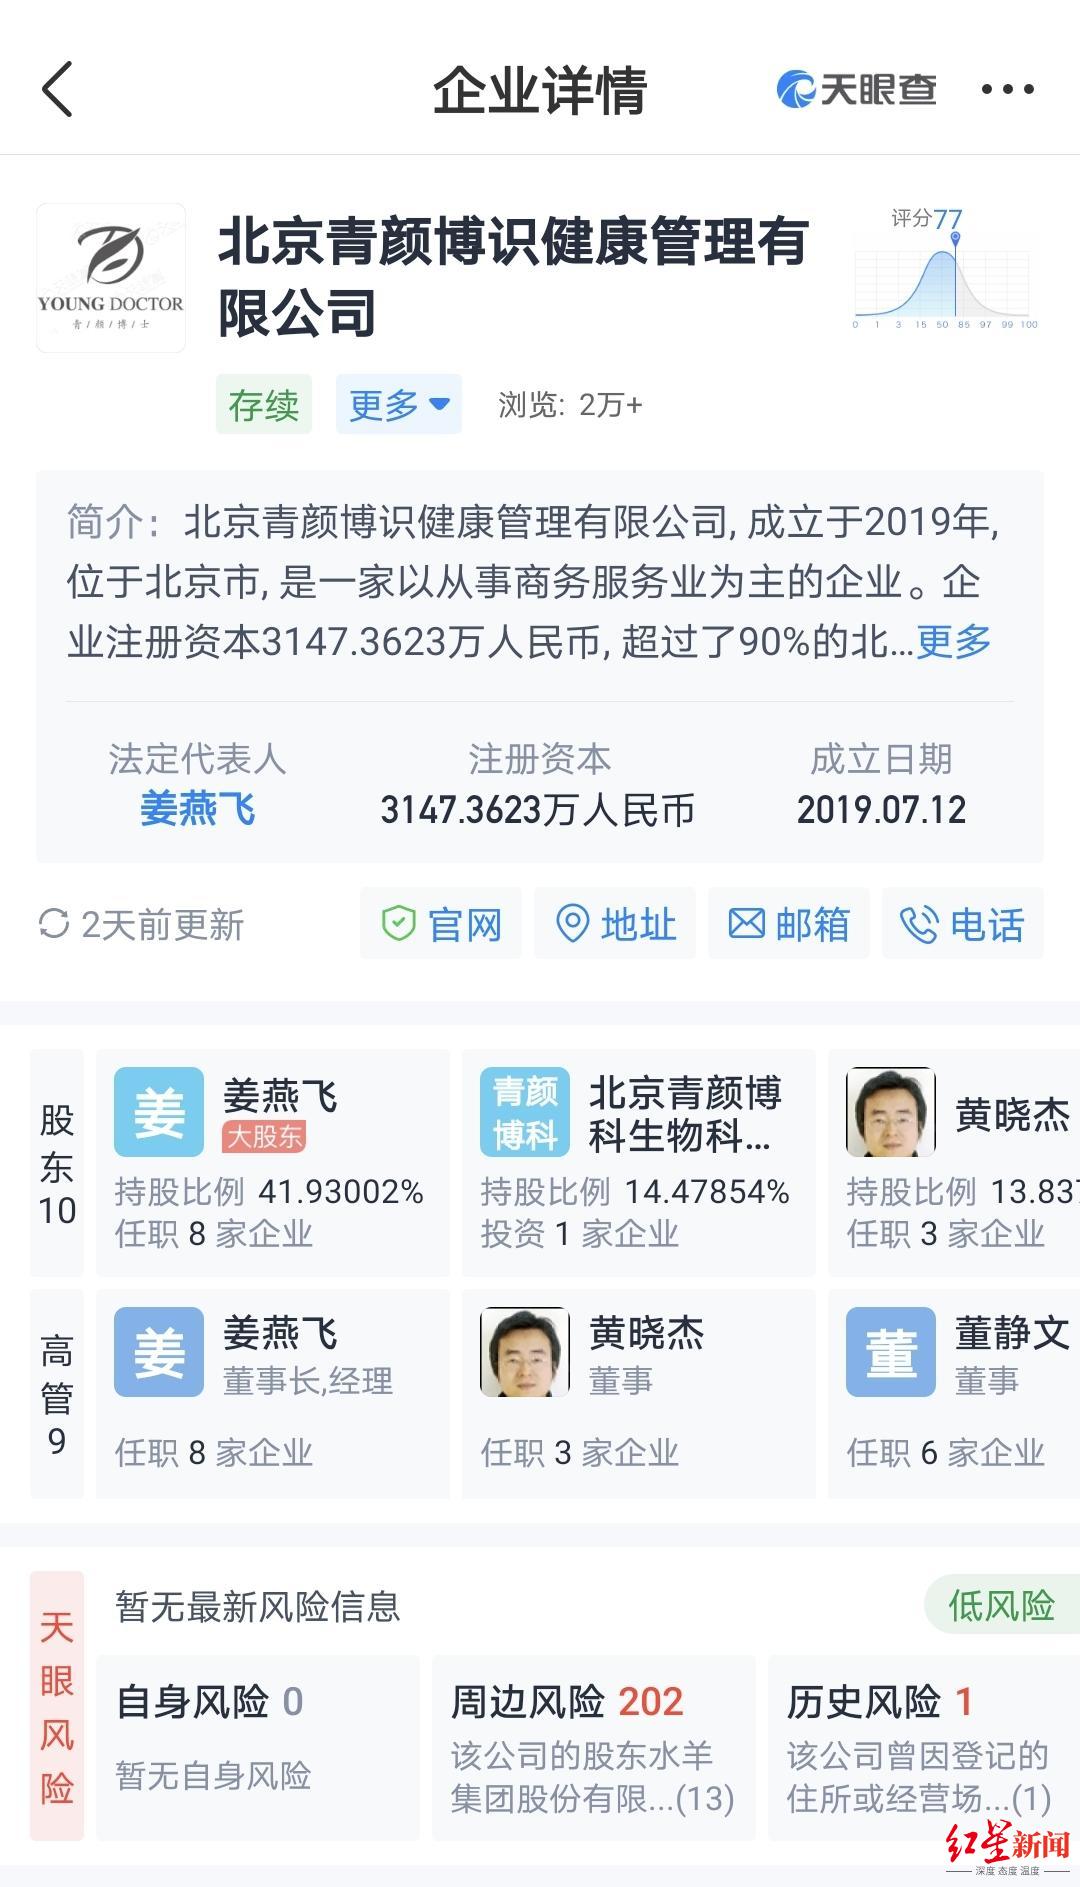 ↑北京青颜博识健康管理有限公司工商信息